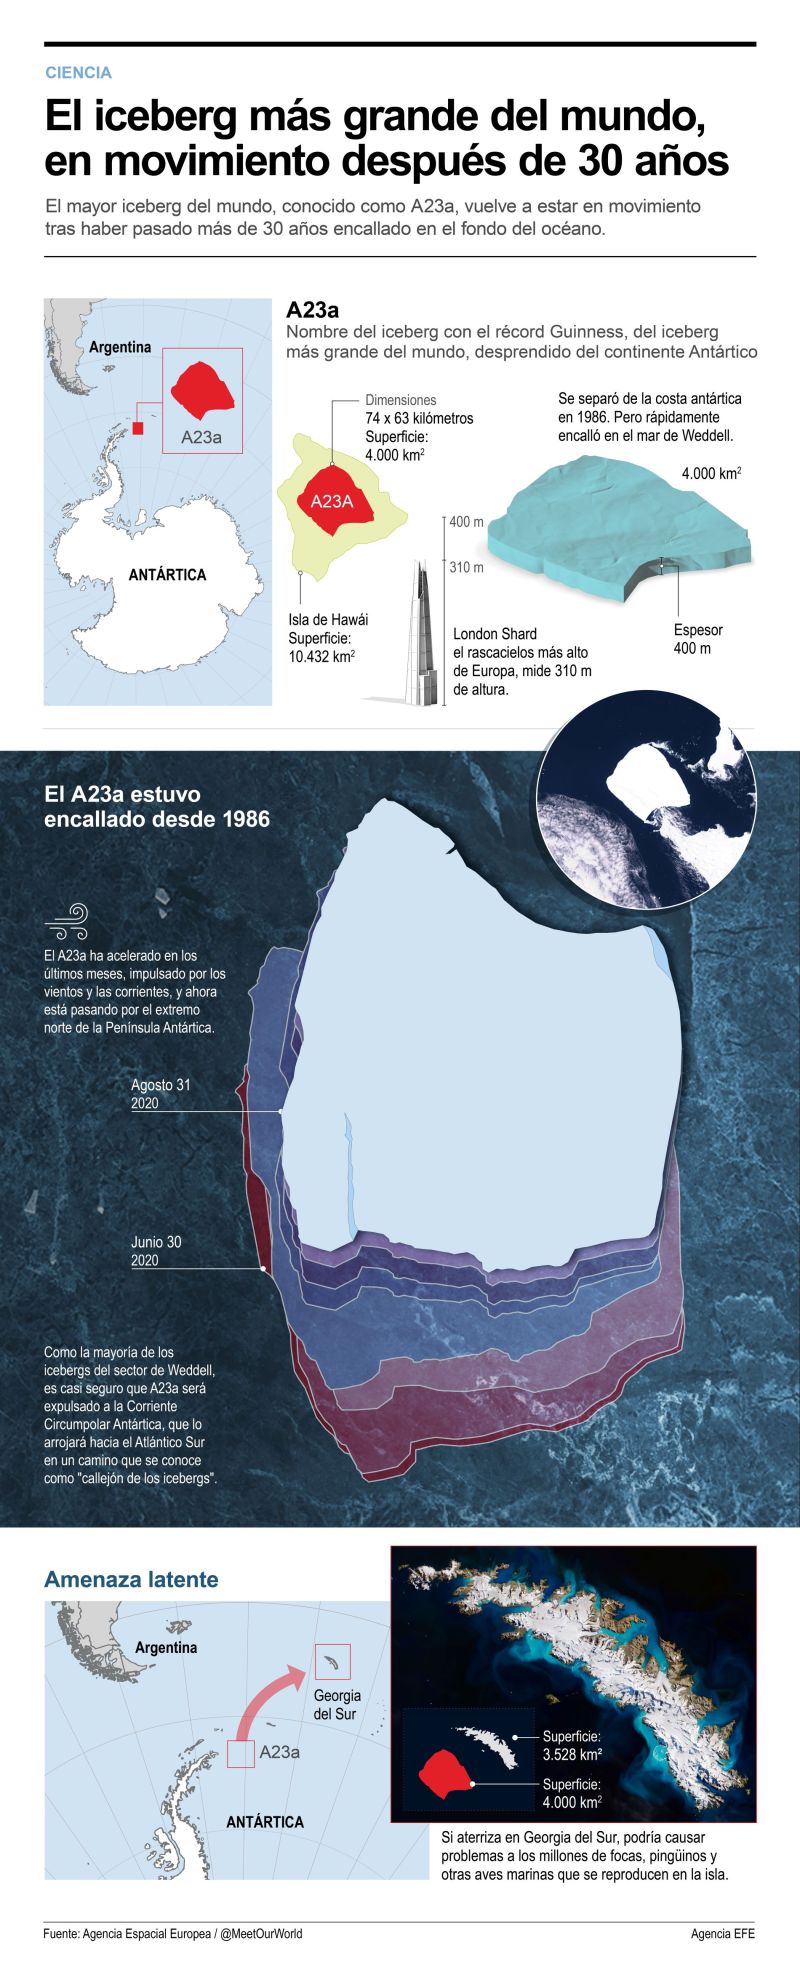 El iceberg más grande del mundo, en movimiento después de 30 años 01 261123